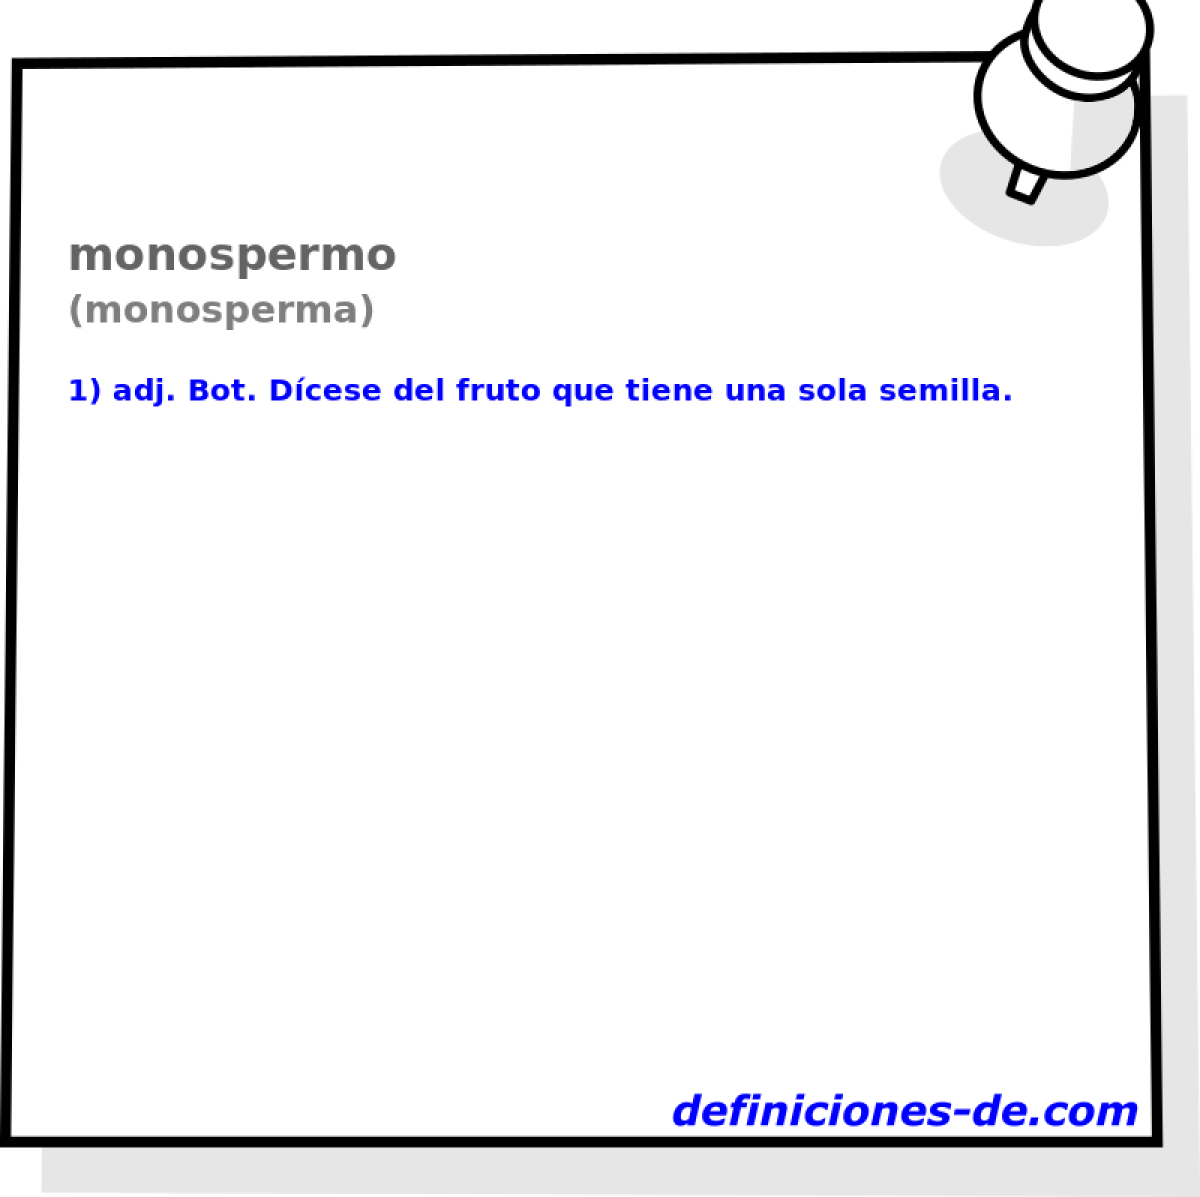 monospermo (monosperma)